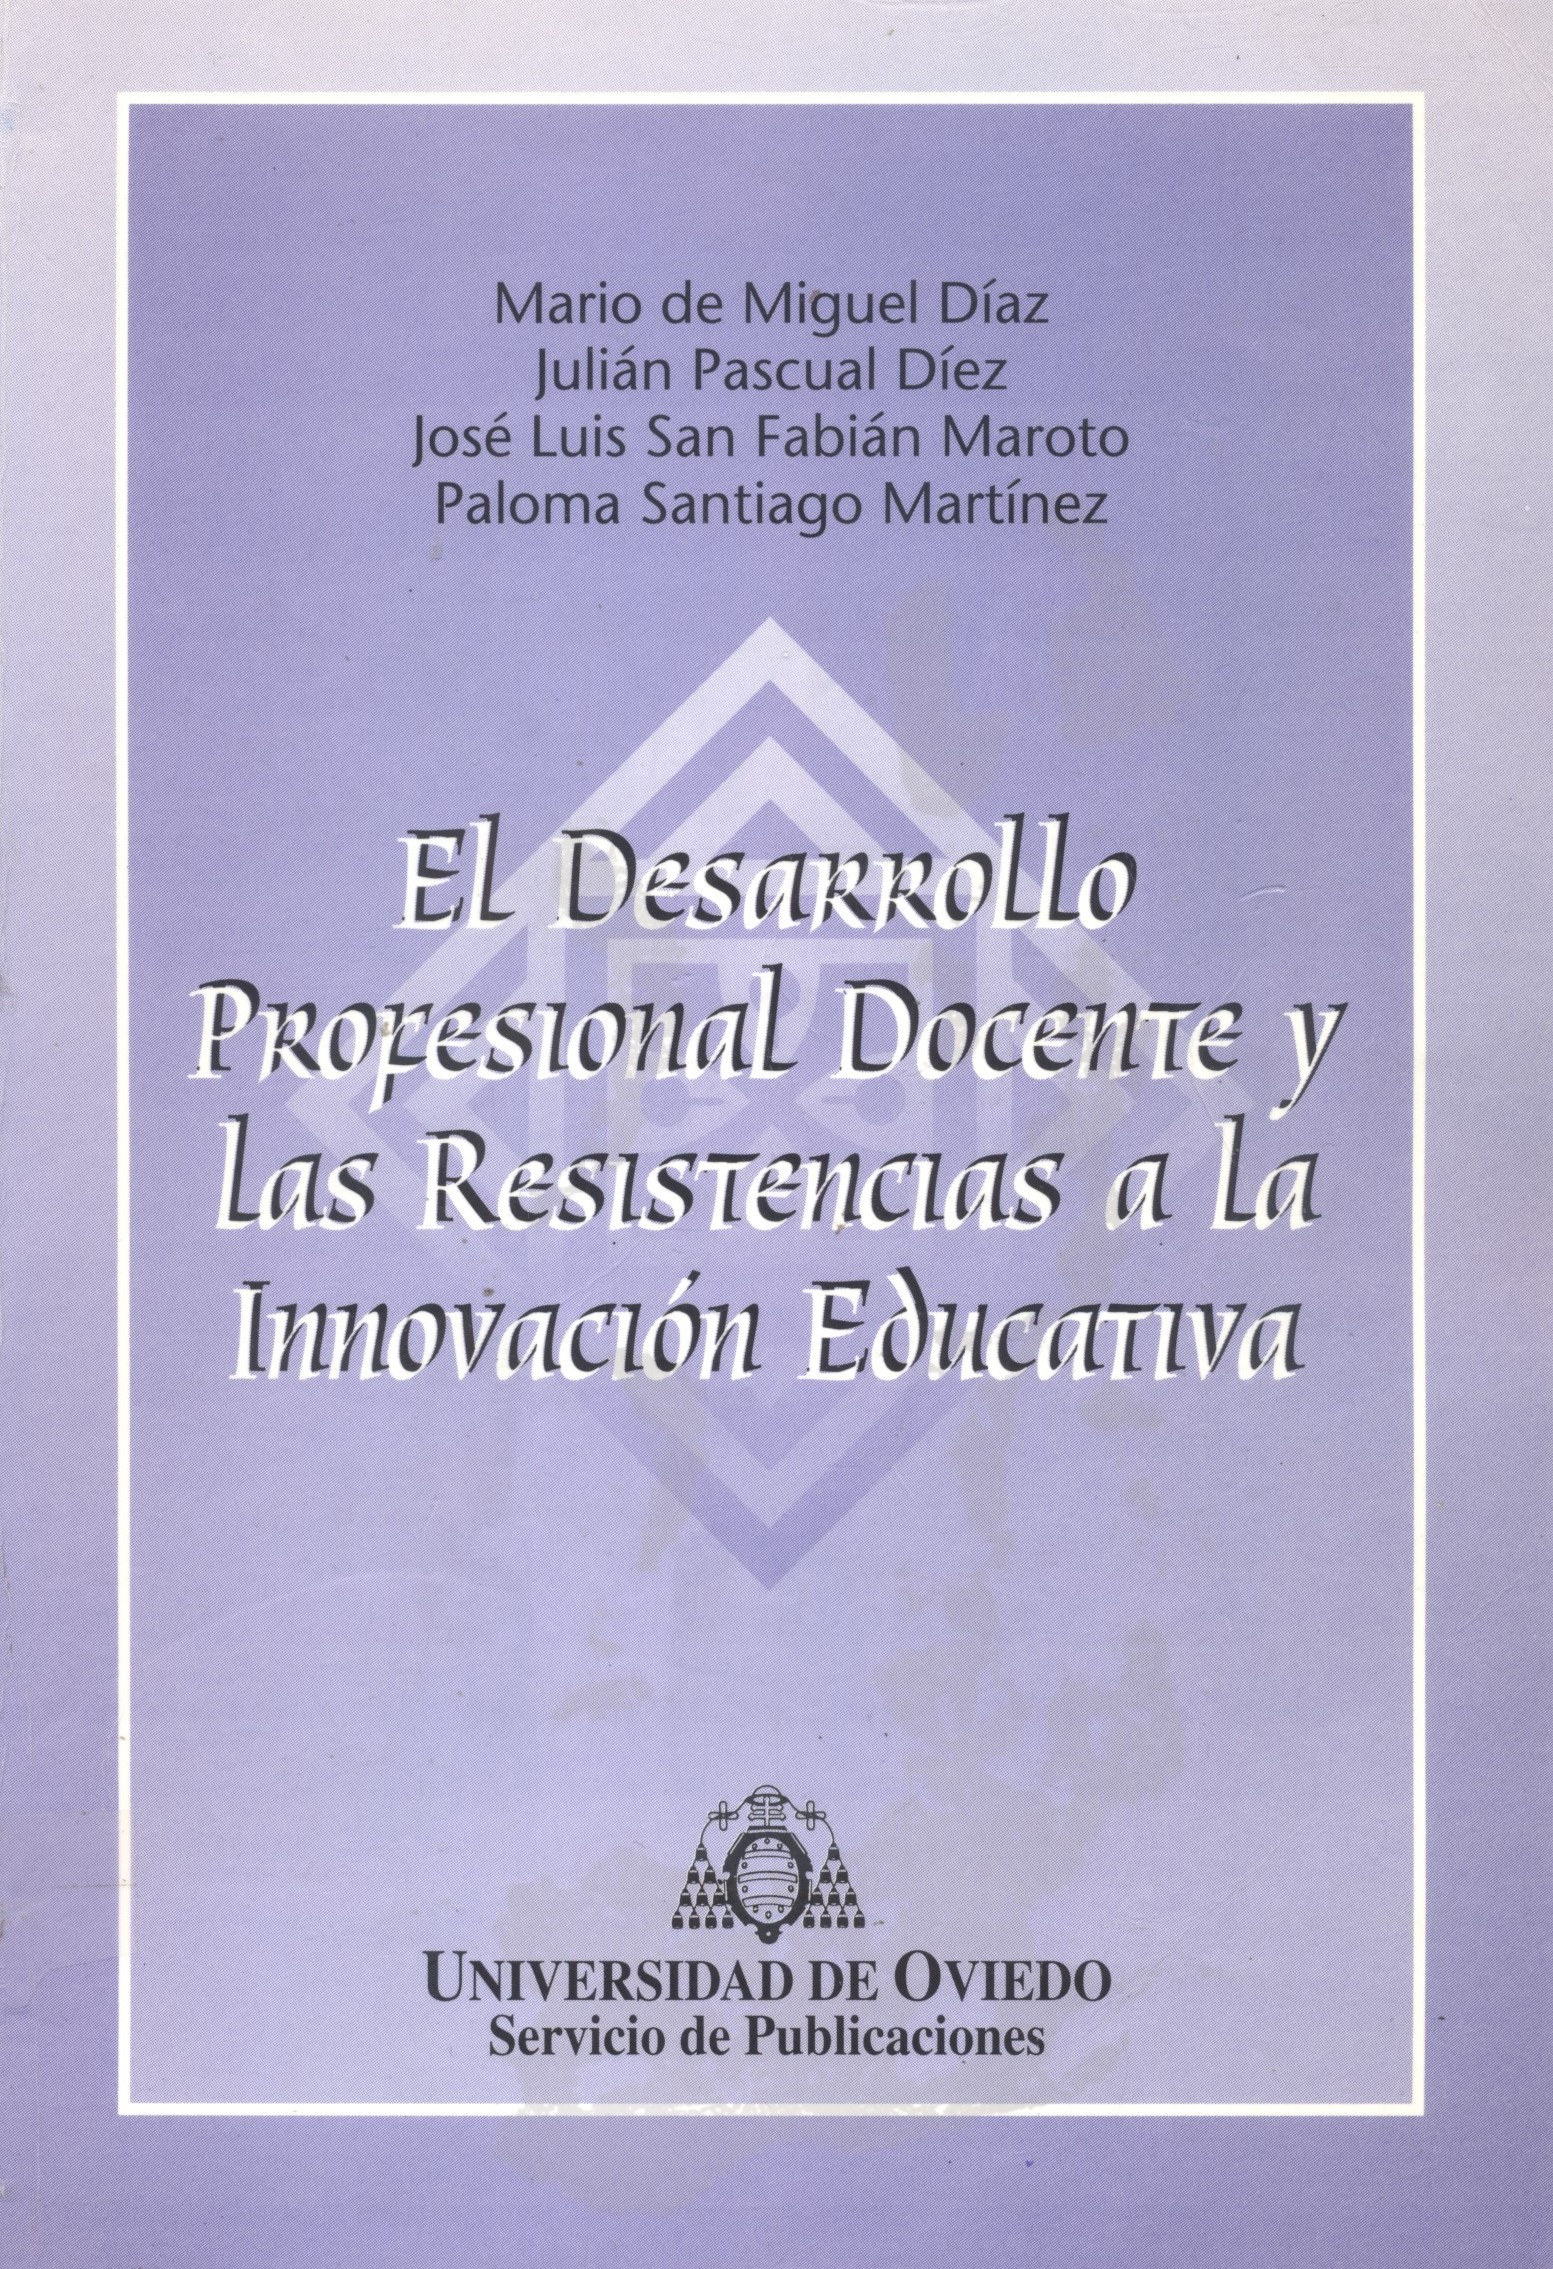 Imagen de portada del libro El Desarrollo profesional docente y las resistencias a la innovación educativa